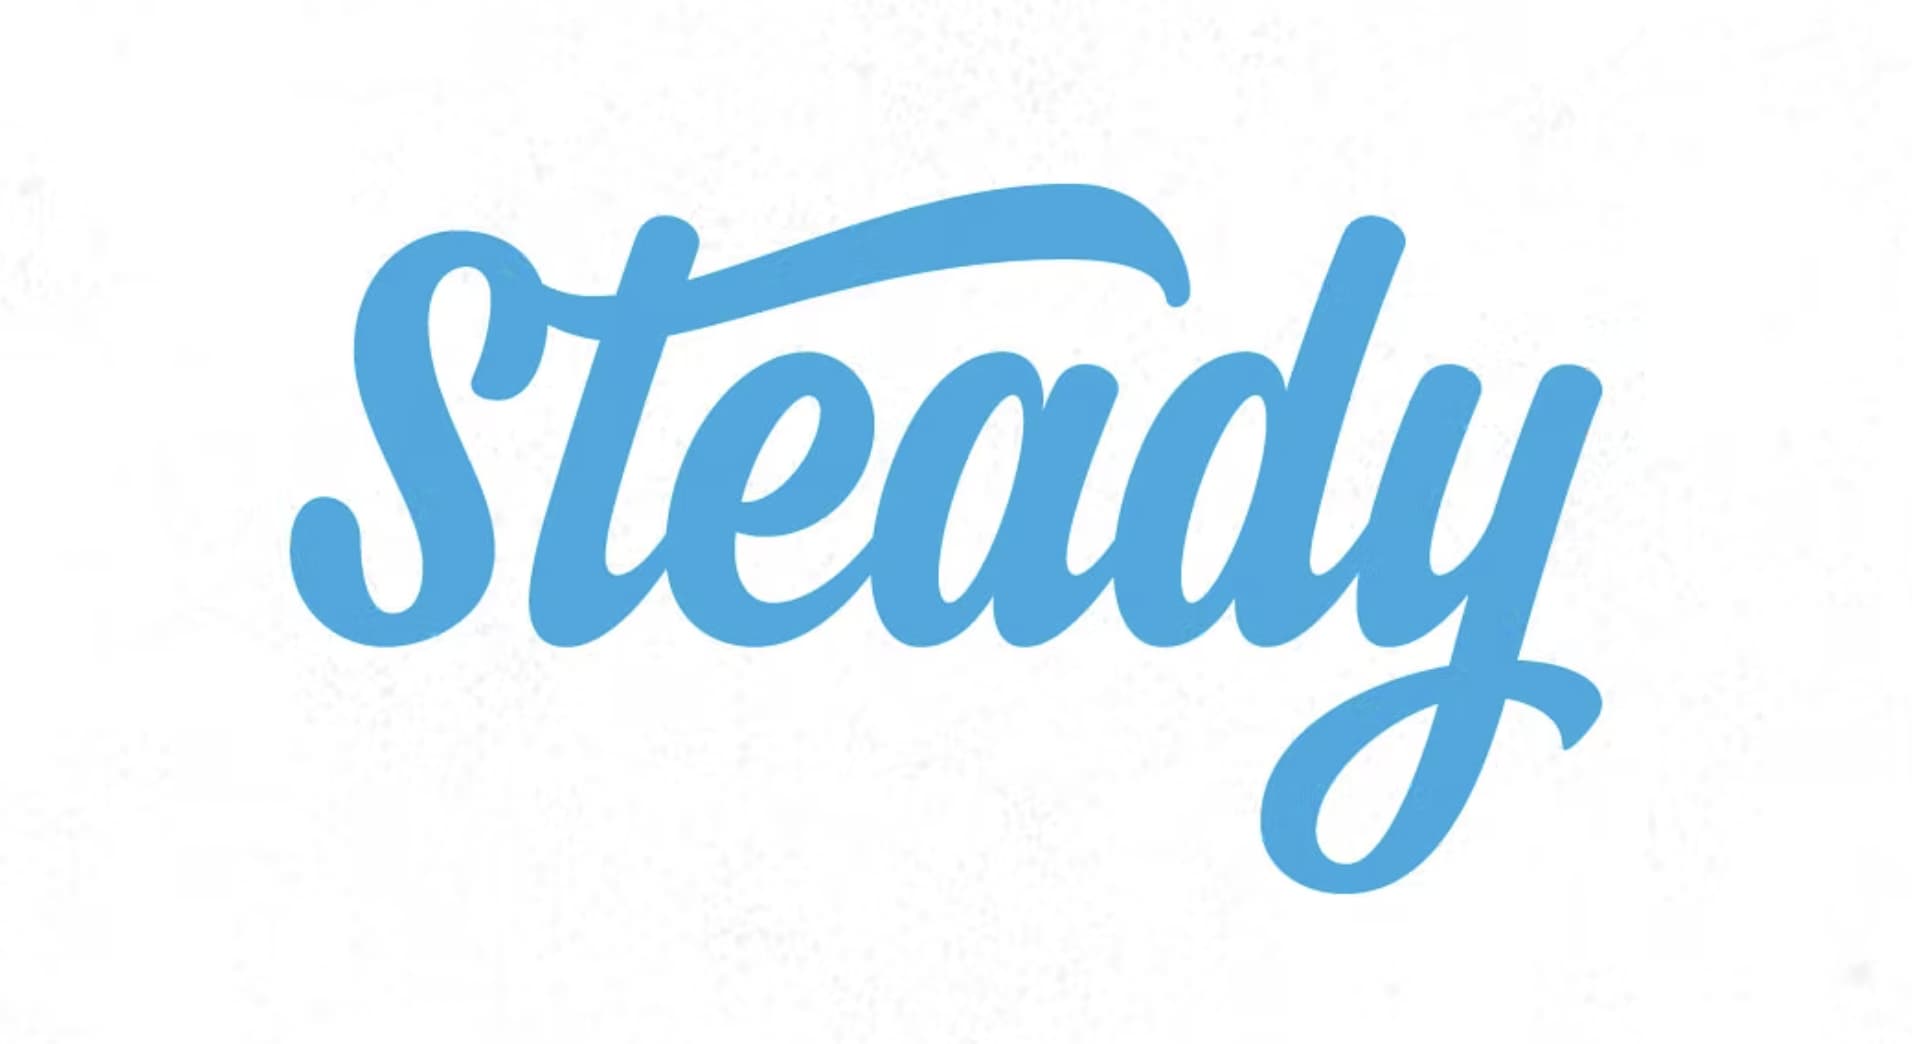 Tipos de letras para logos: Steady